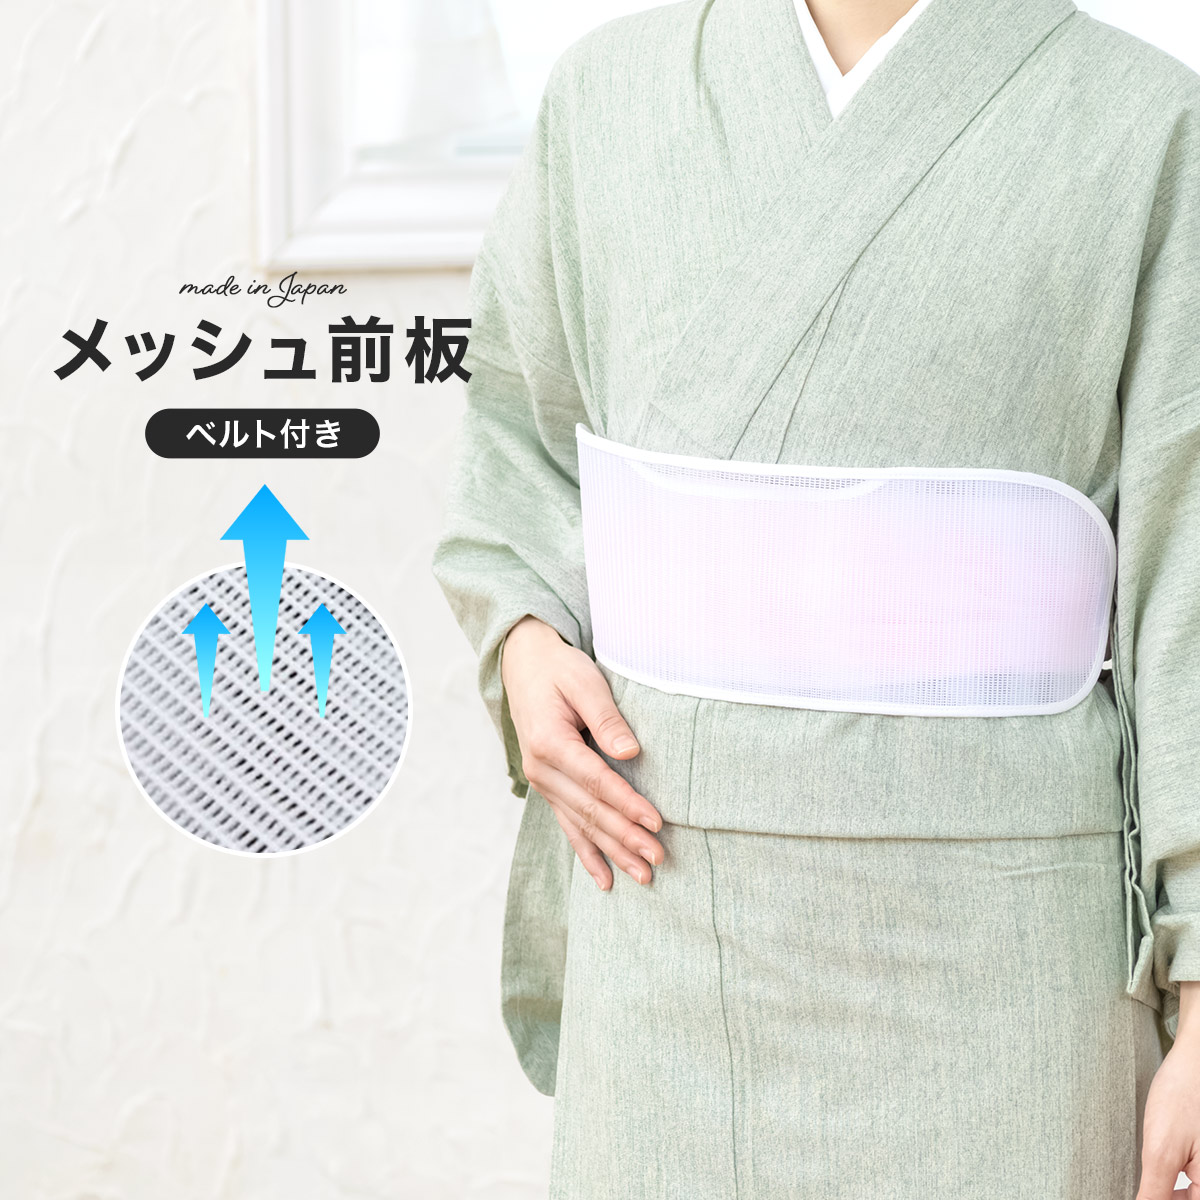 前板 メッシュ ベルト付き 夏 浴衣 帯板 白 あづま姿 着付け小物 和装小物 日本製 あす楽対応商品 